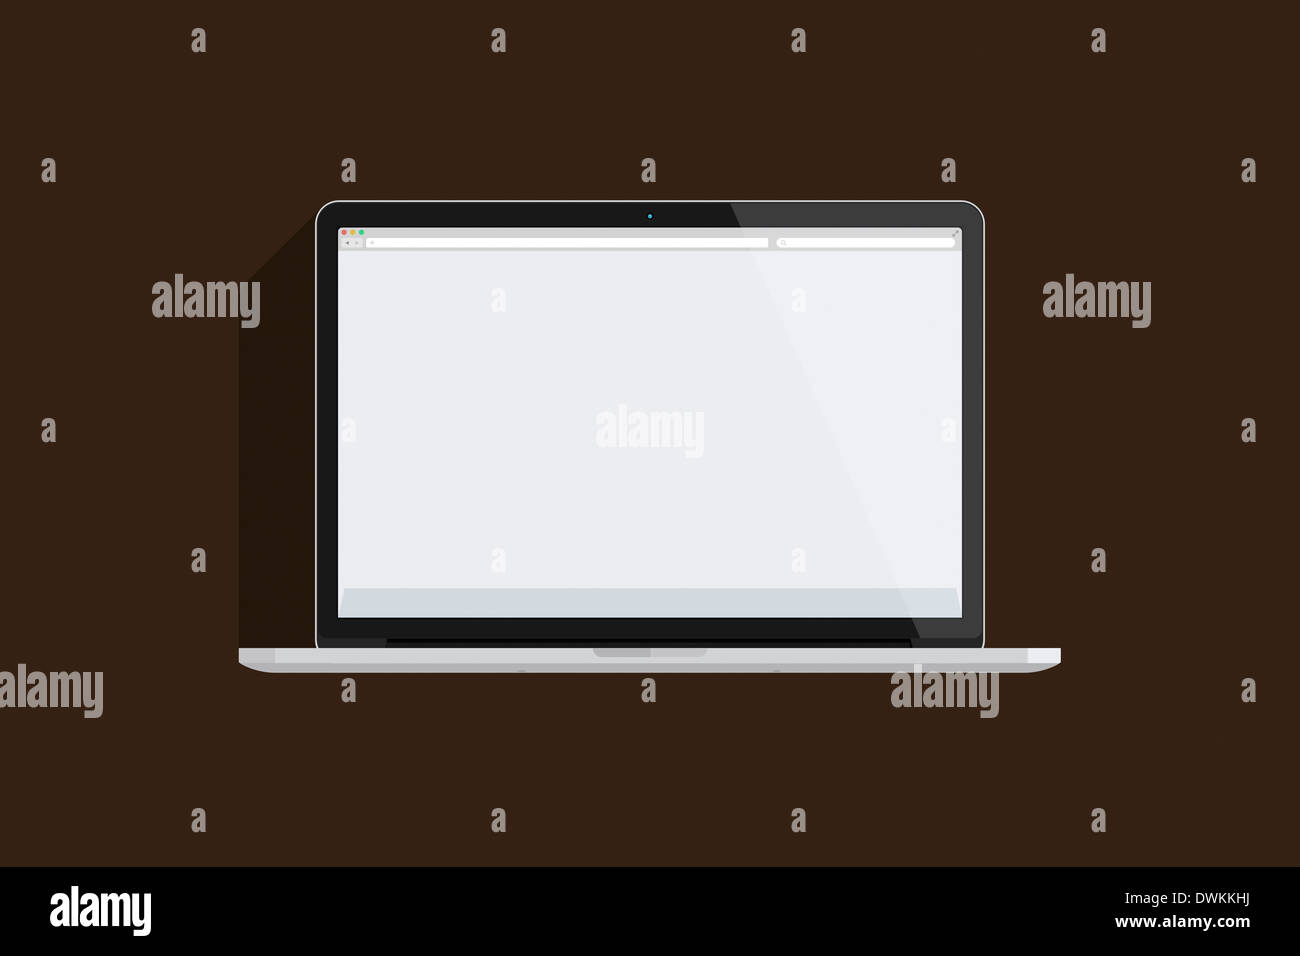 Illustrazione di un mac book, sfondo marrone. Foto Stock